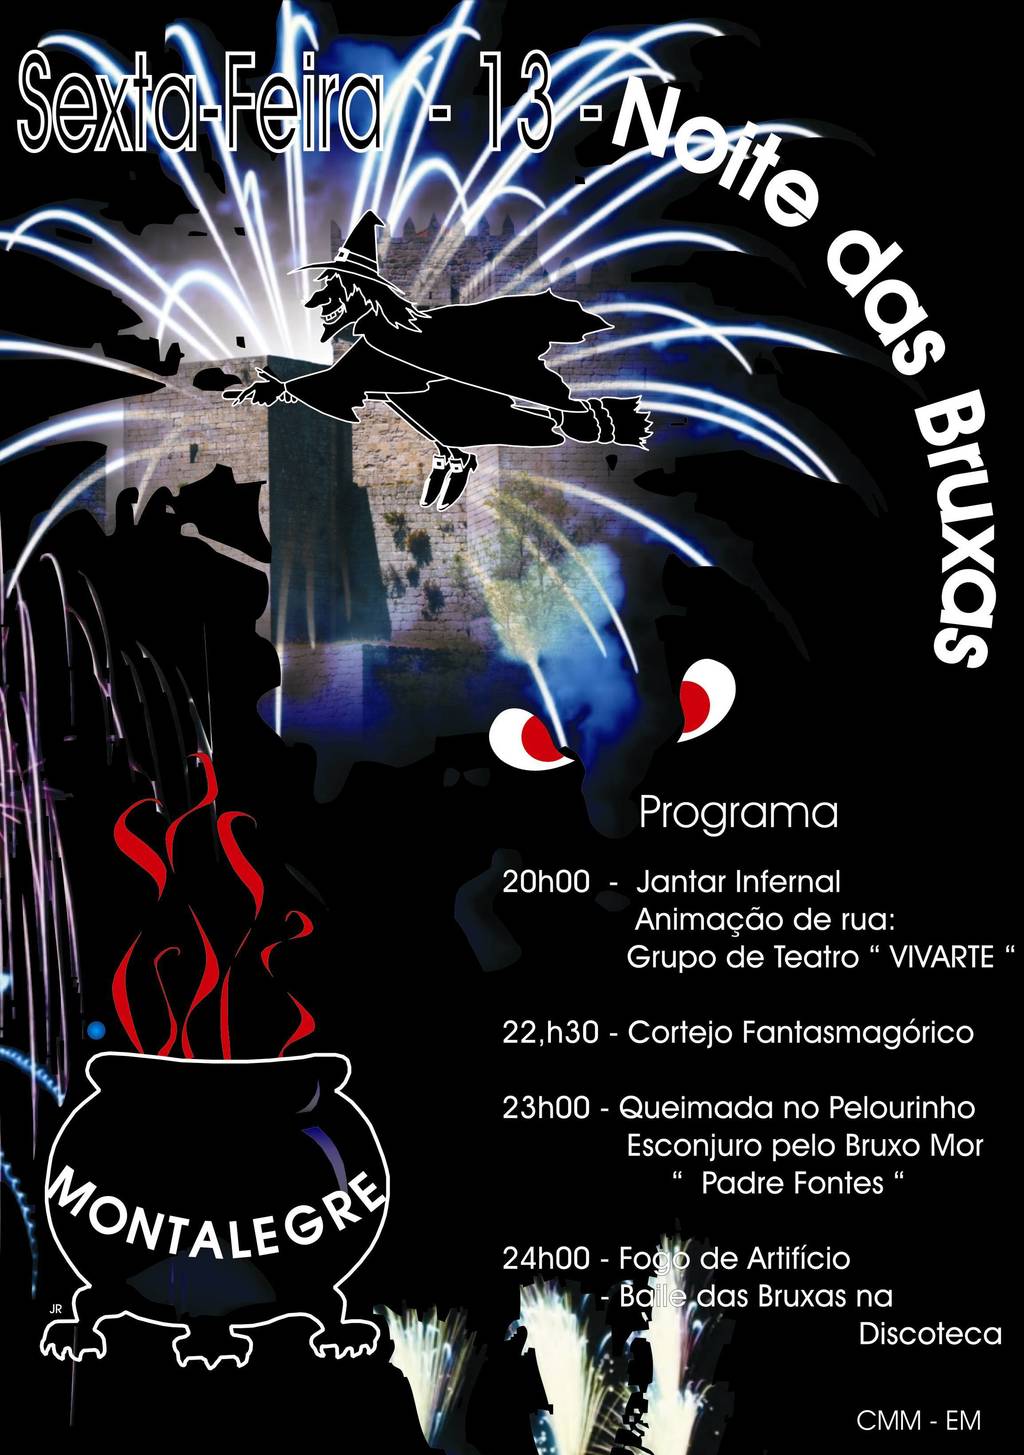 "Noite das Bruxas" hoje em Montalegre